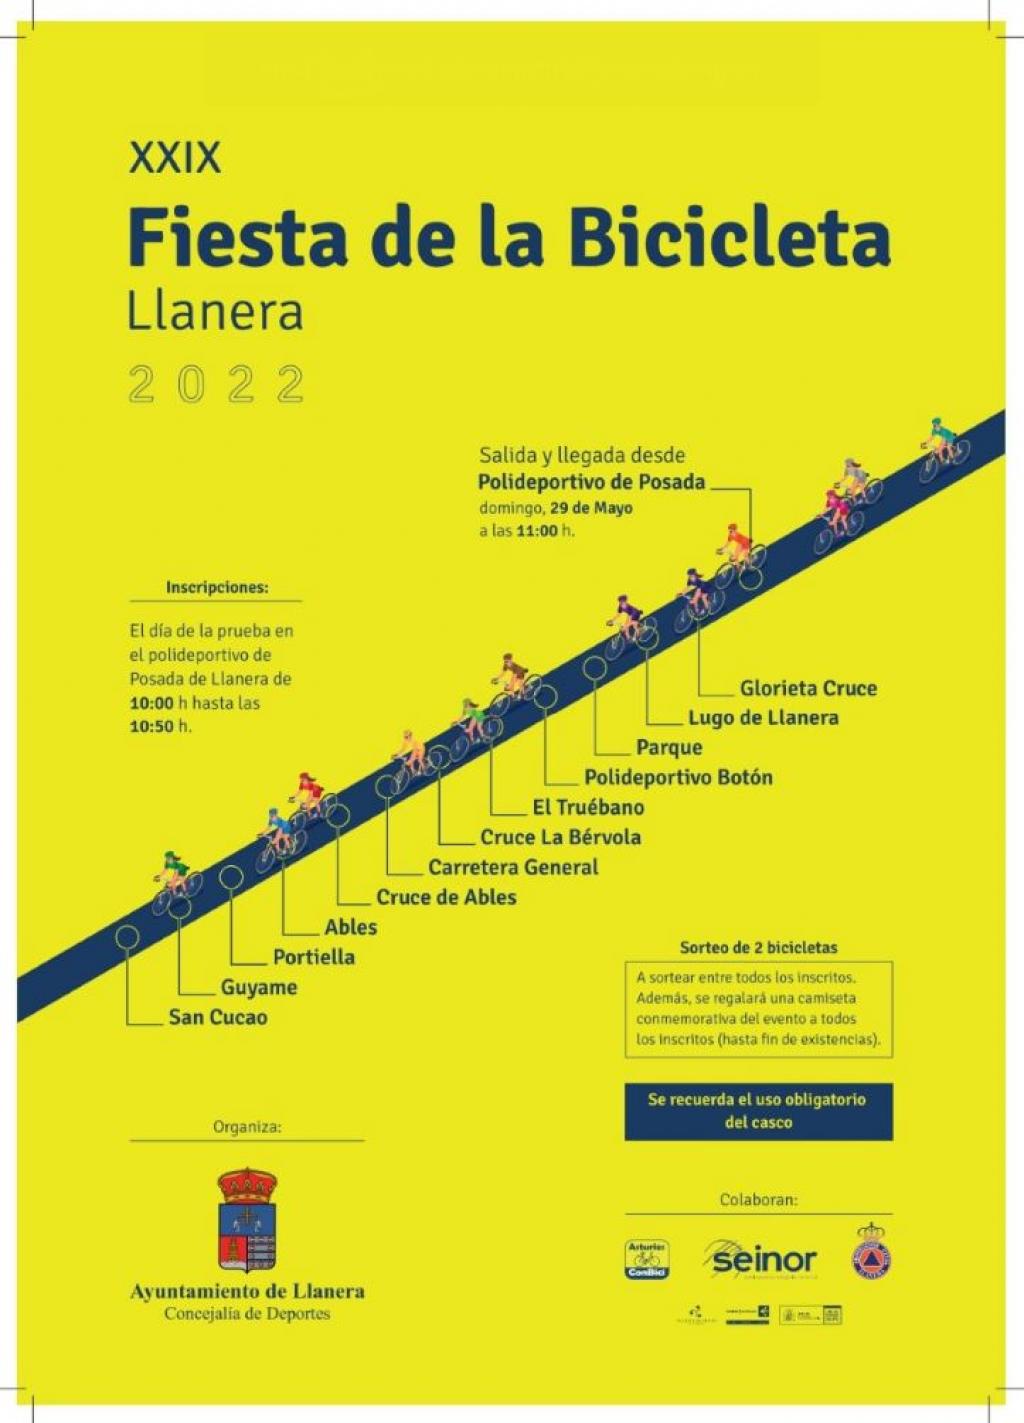 El Tapin - Llanera celebra la XXIX Fiesta de la Bicicleta el domingo 29 de mayo